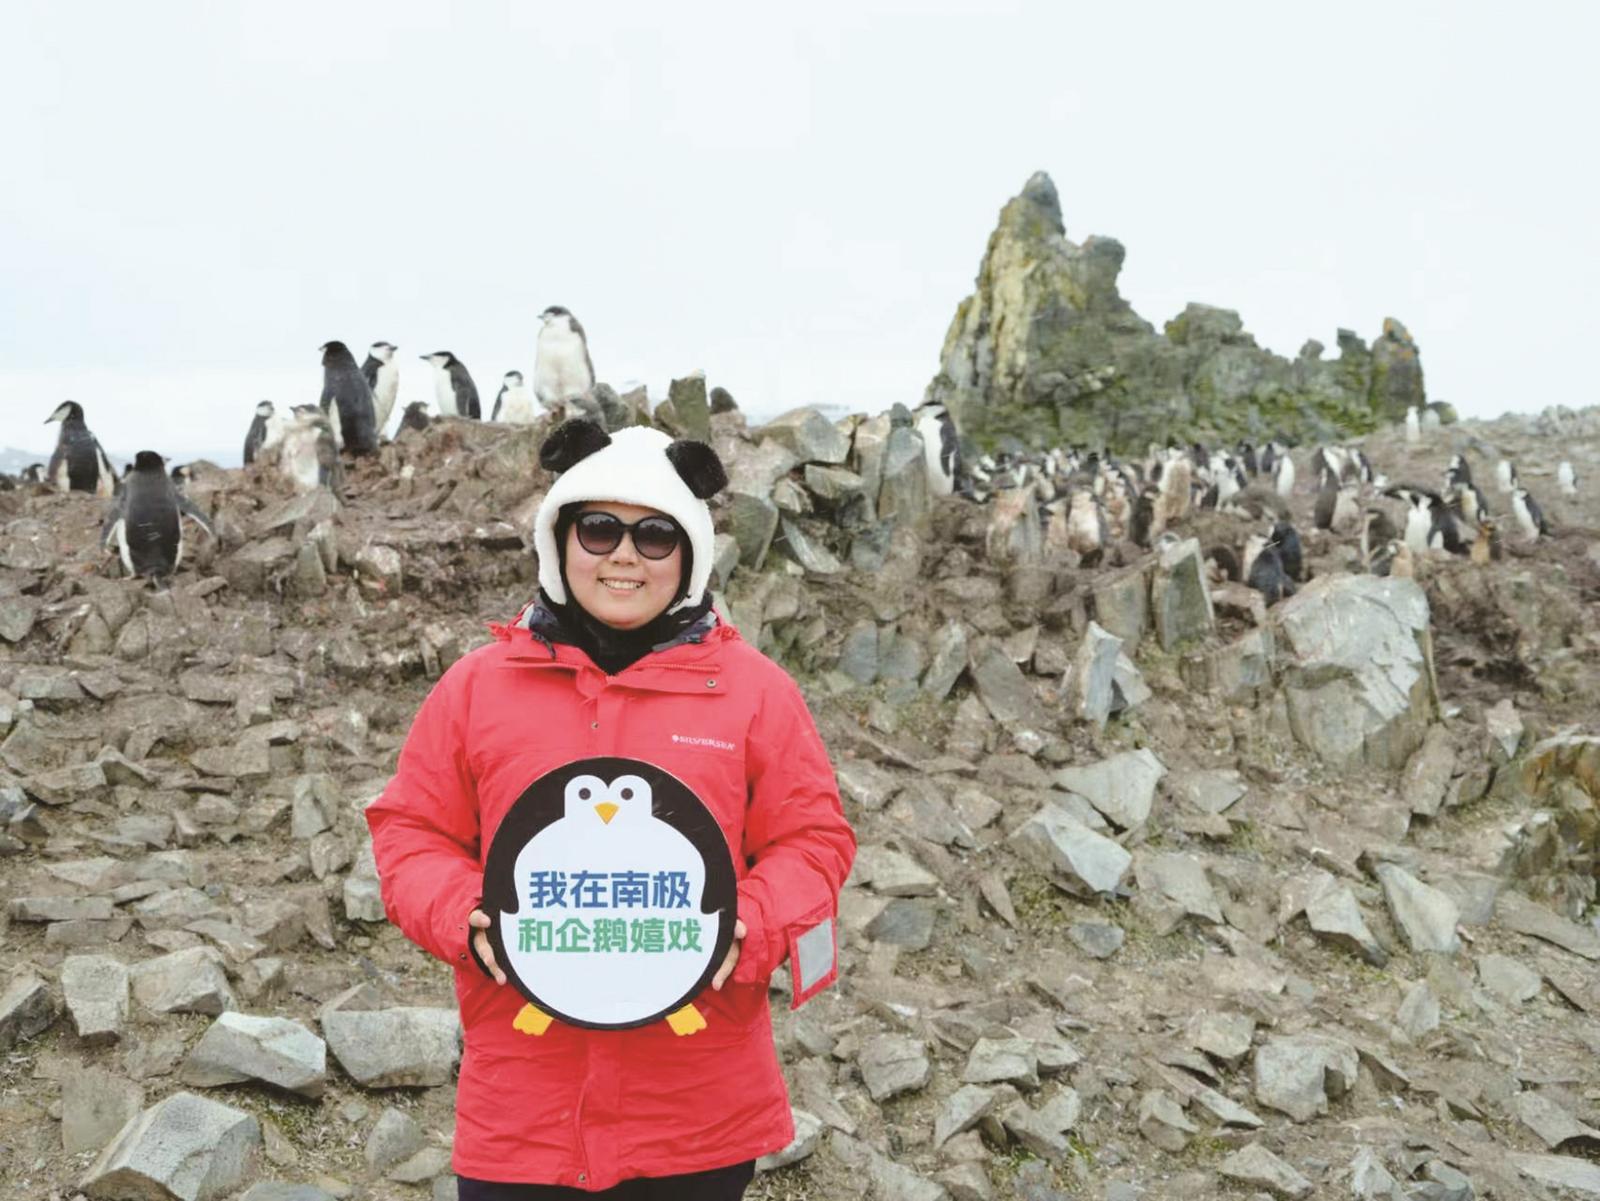 赴南极旅游的中国游客与企鹅合影 6人游定制旅行 供图